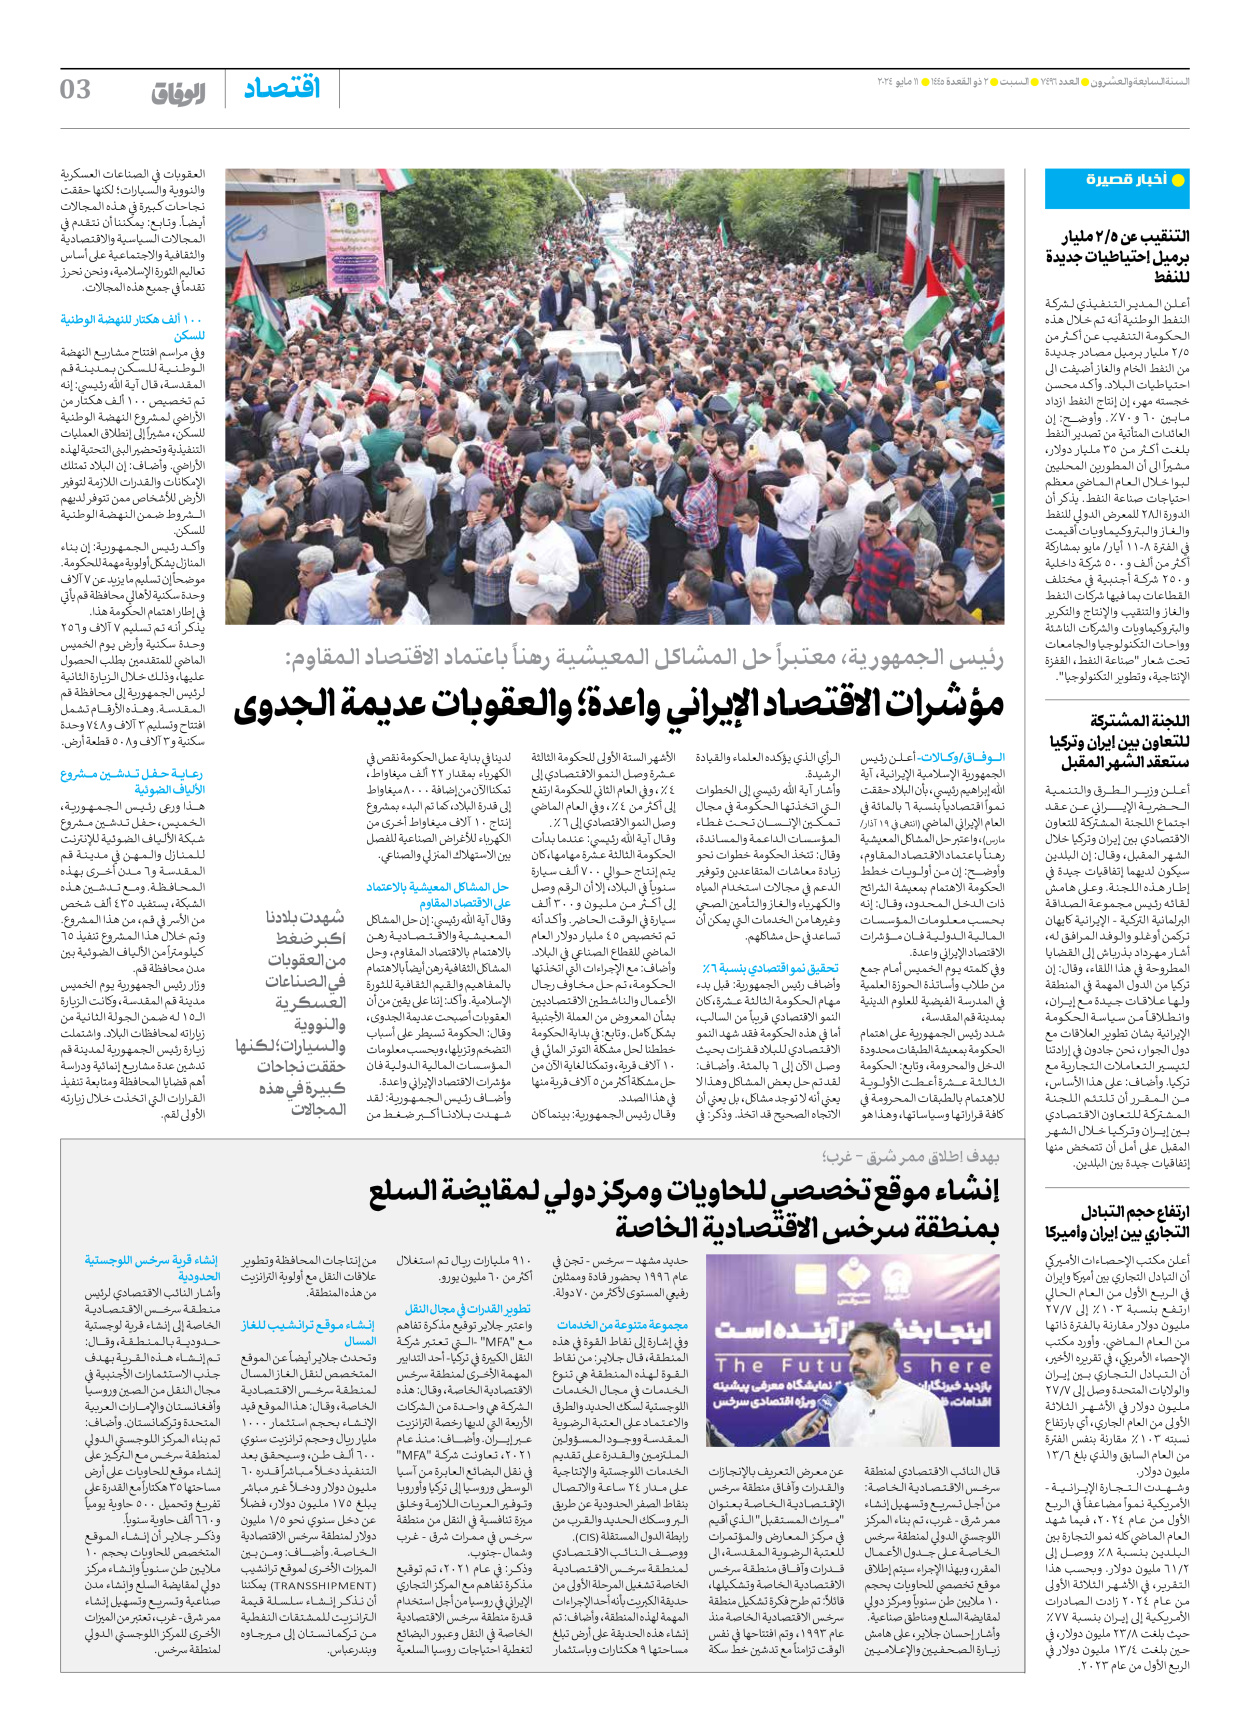 صحیفة ایران الدولیة الوفاق - العدد سبعة آلاف وأربعمائة وستة وتسعون - ١١ مايو ٢٠٢٤ - الصفحة ۳